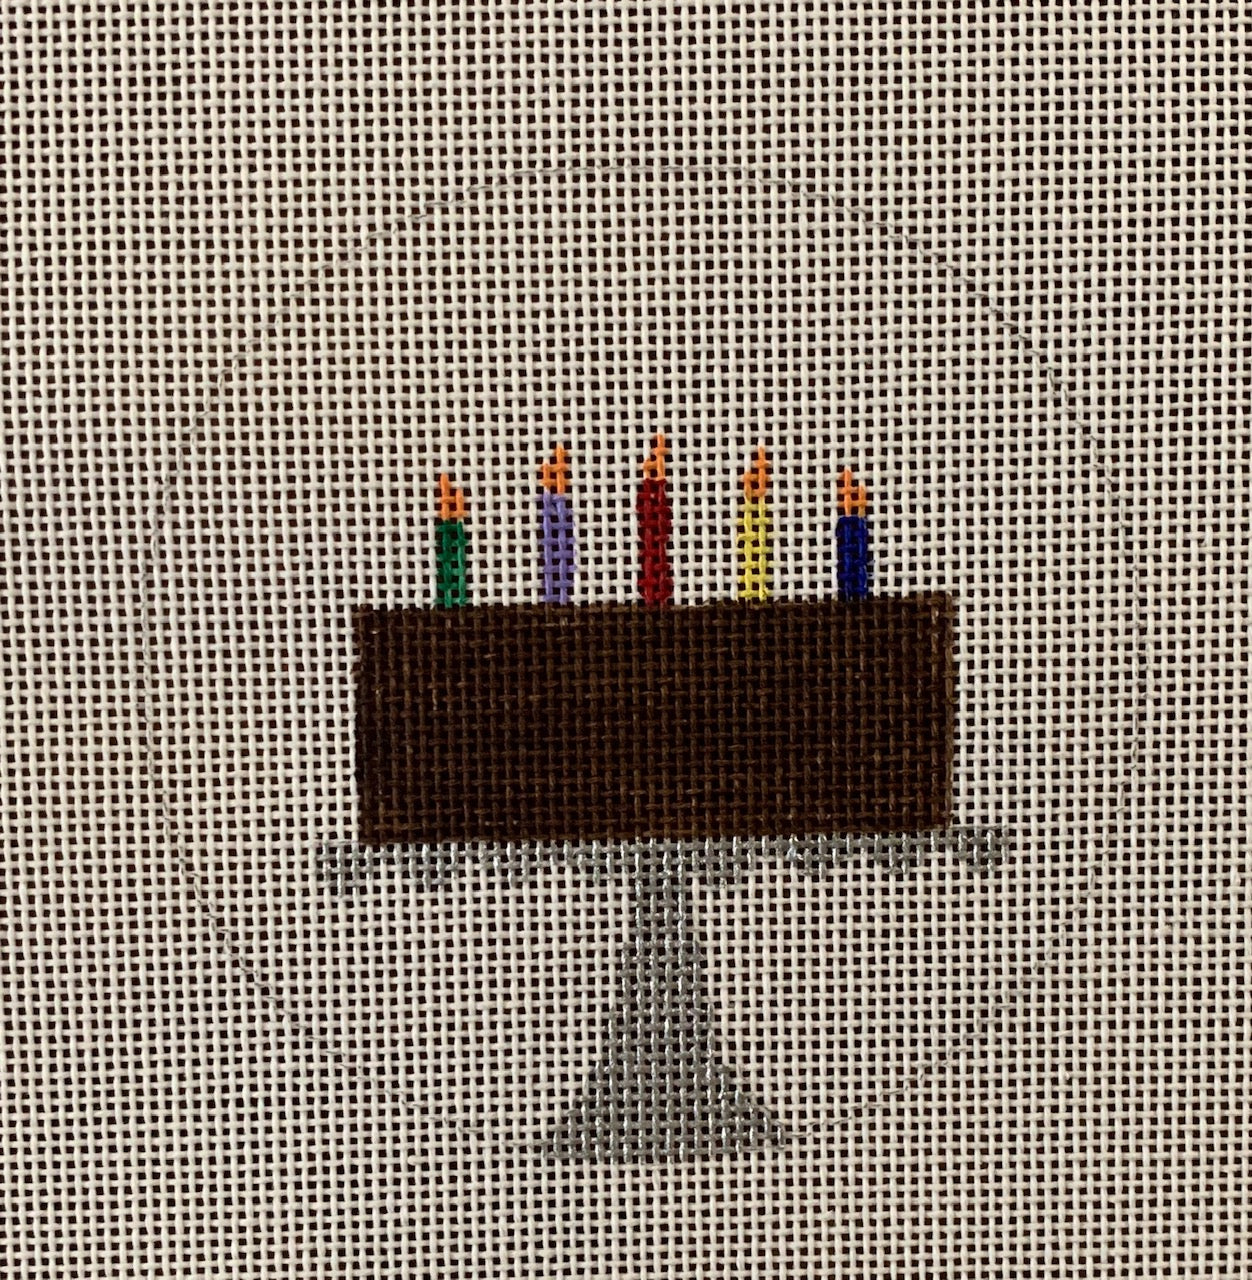 O-14 - Birthday Cake